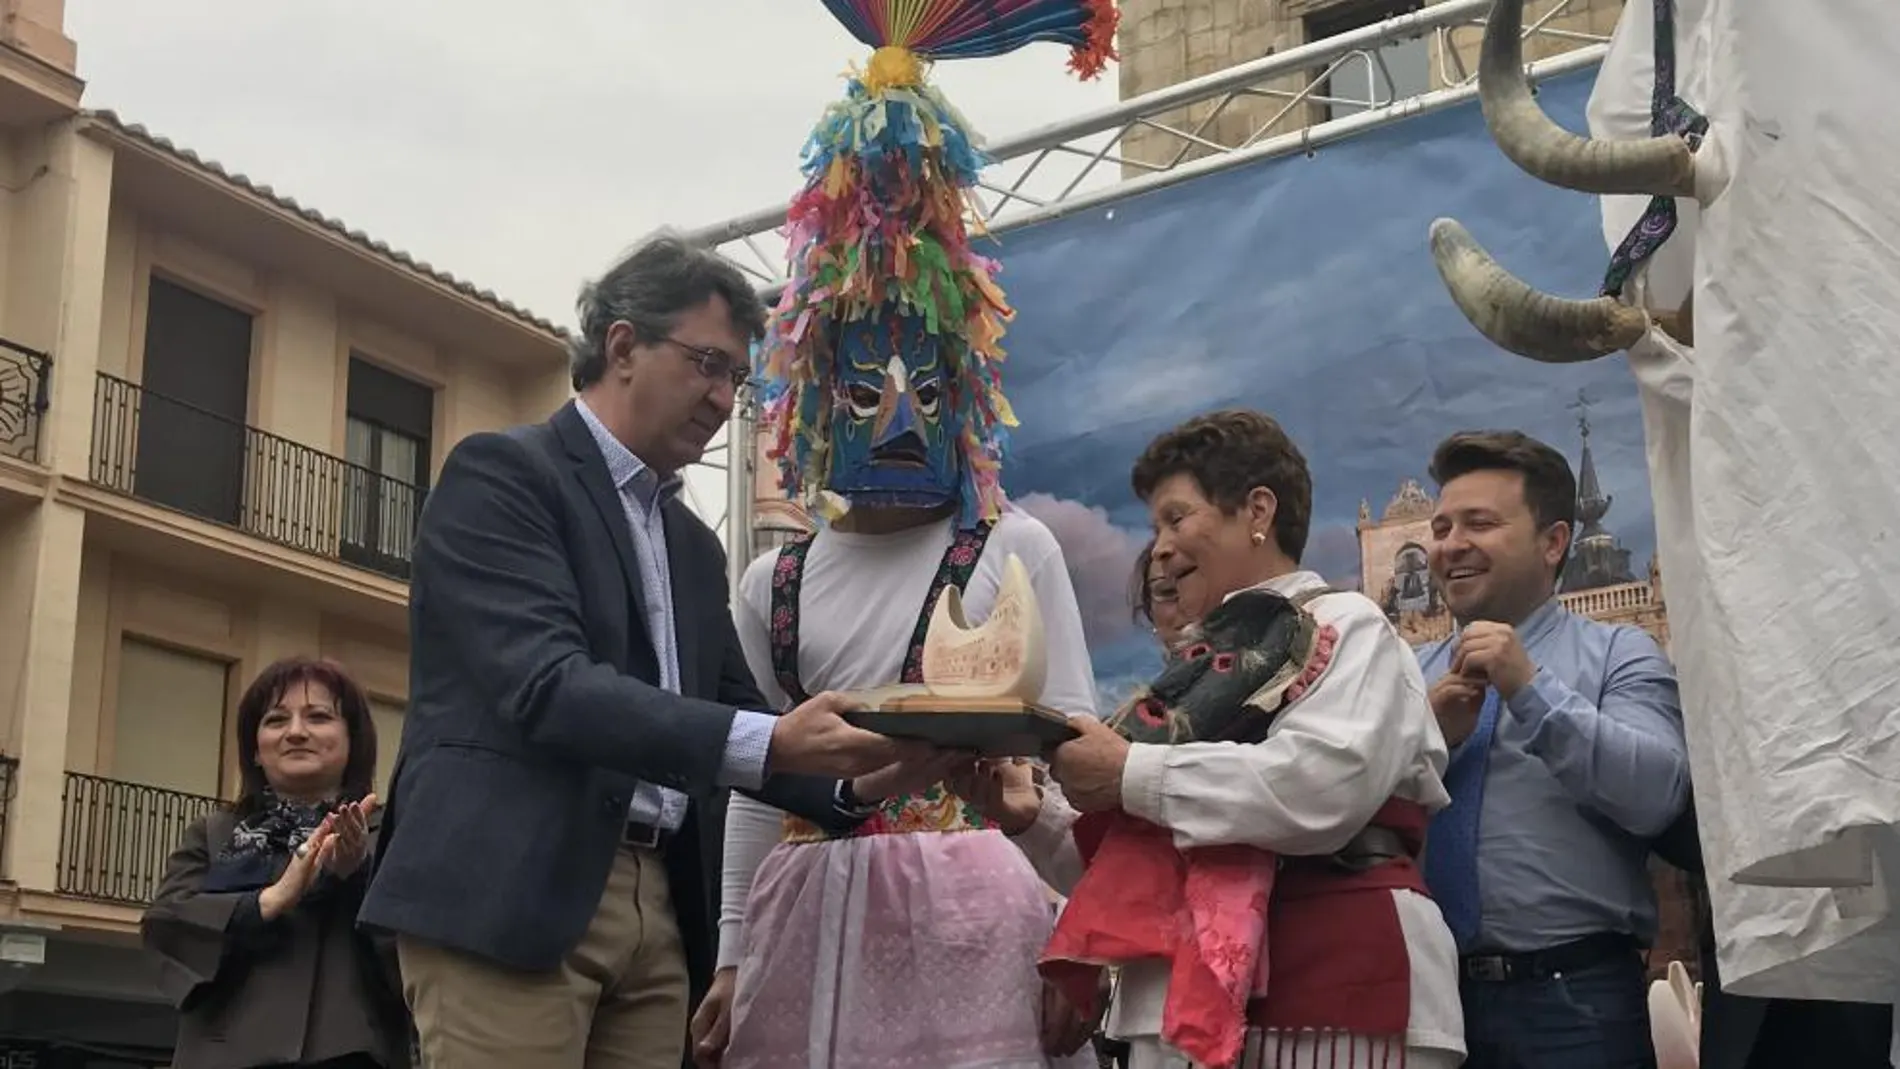 El presidente de la Diputación de León, Juan Martínez Majo, entrega una placa a los participantes en el desfile